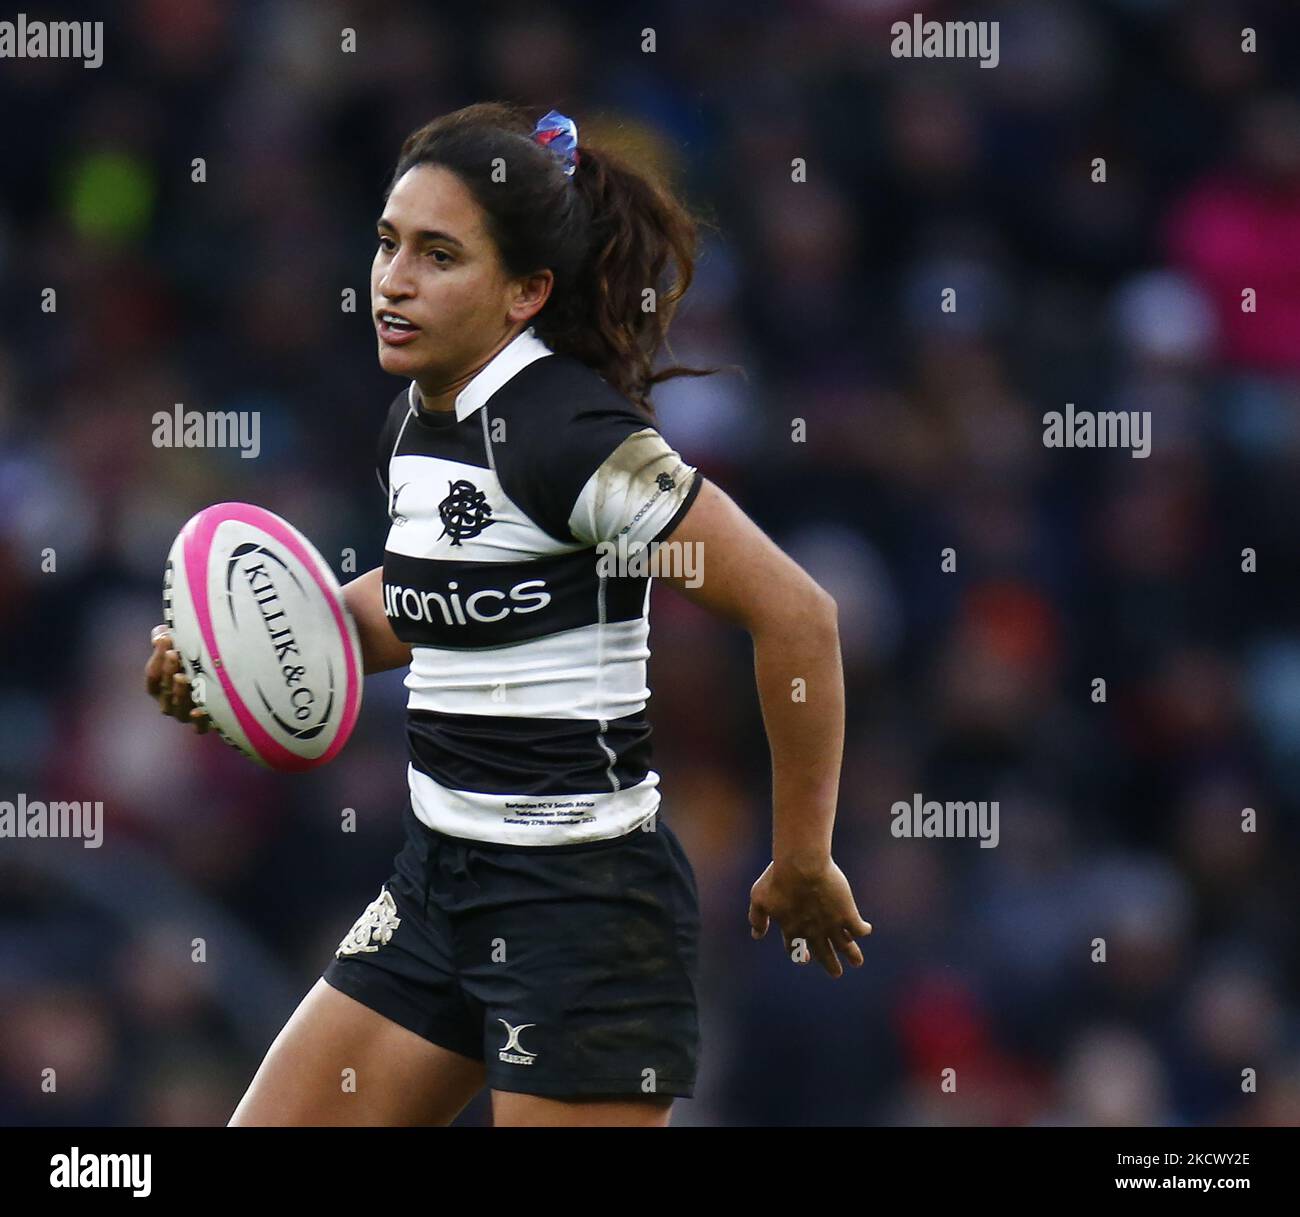 Rugby new york immagini e fotografie stock ad alta risoluzione - Alamy